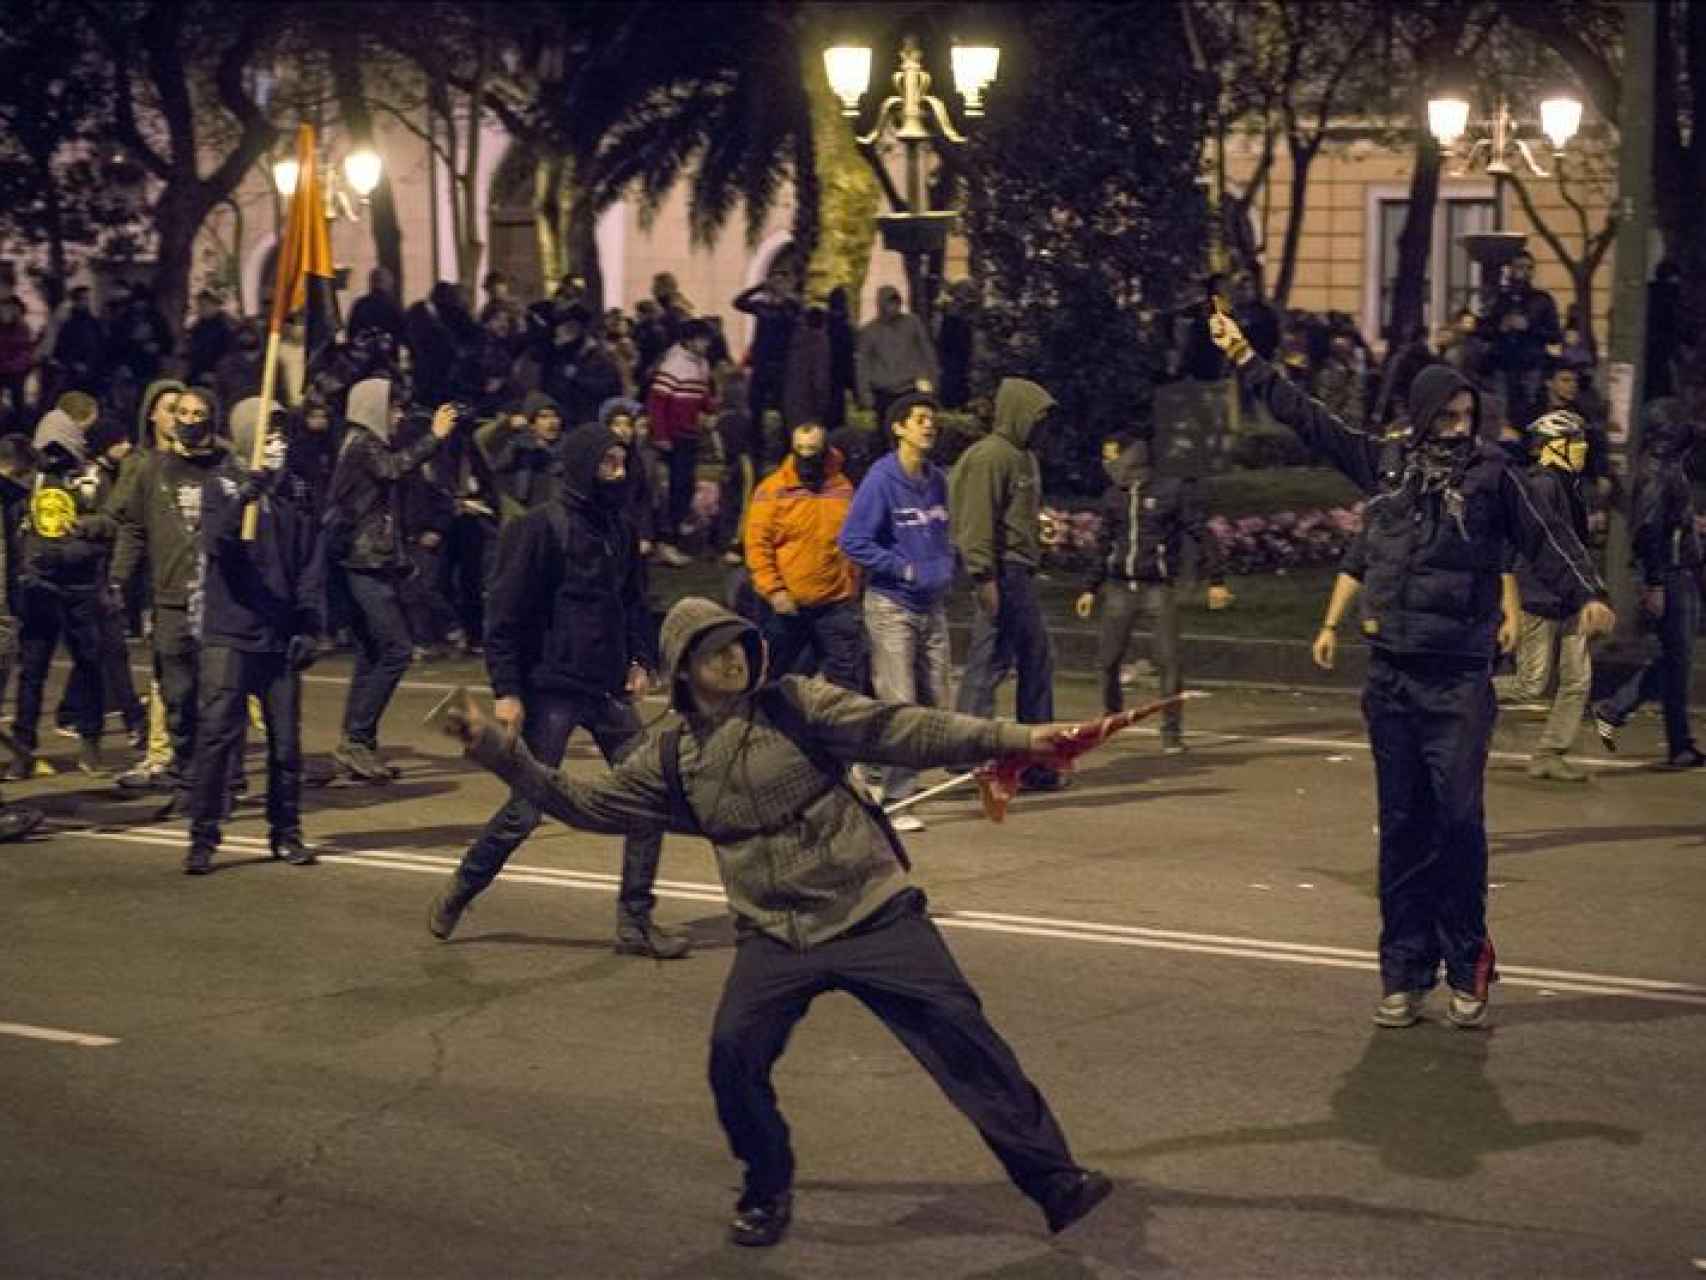 Manifestante tirando un adoquín en una revuelta.